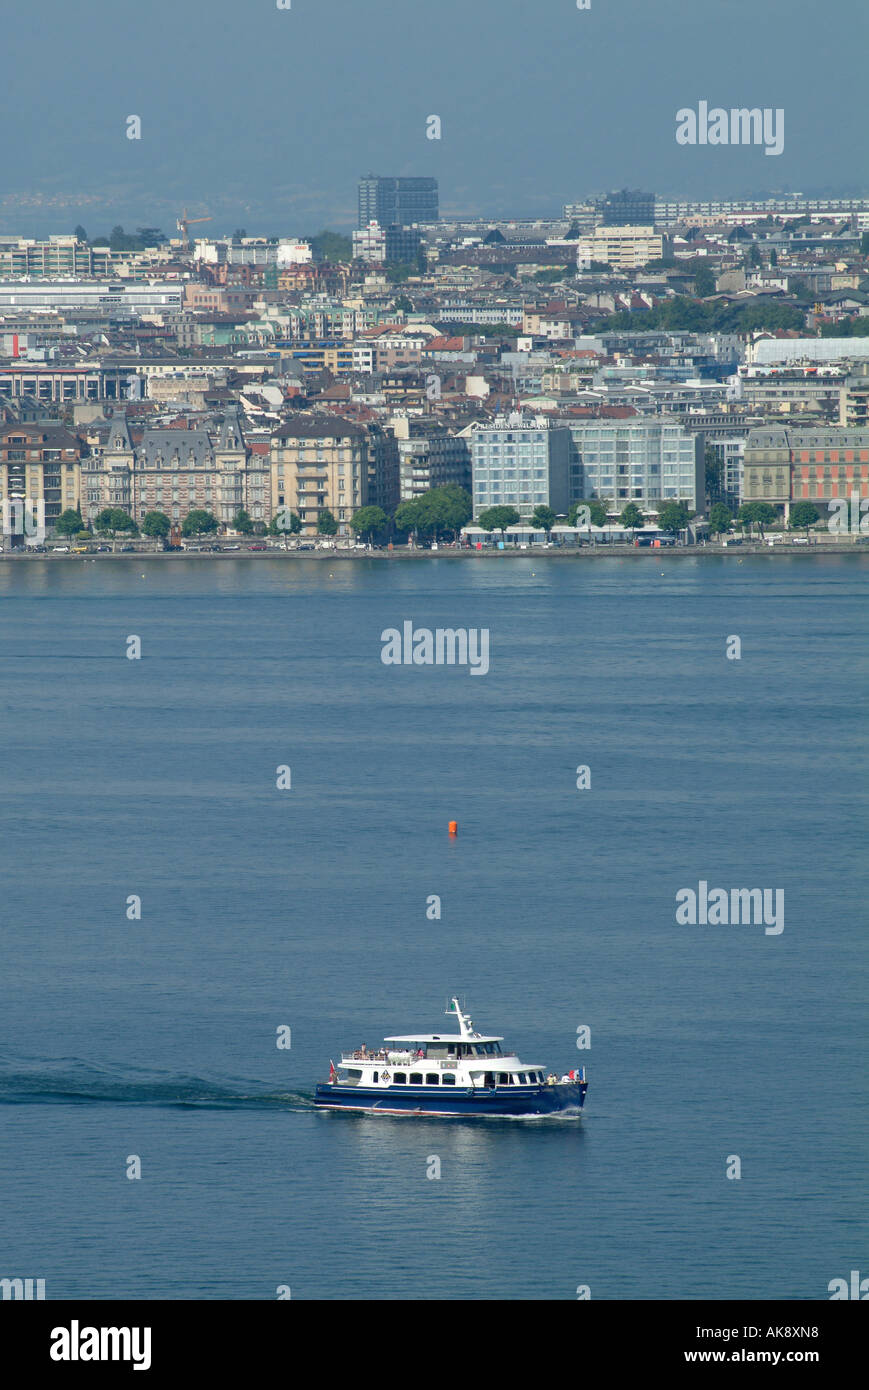 Geneva. Boat on Lake Geneva with skyline of the city of Geneva. Rive droite. Quai Wilson. Stock Photo